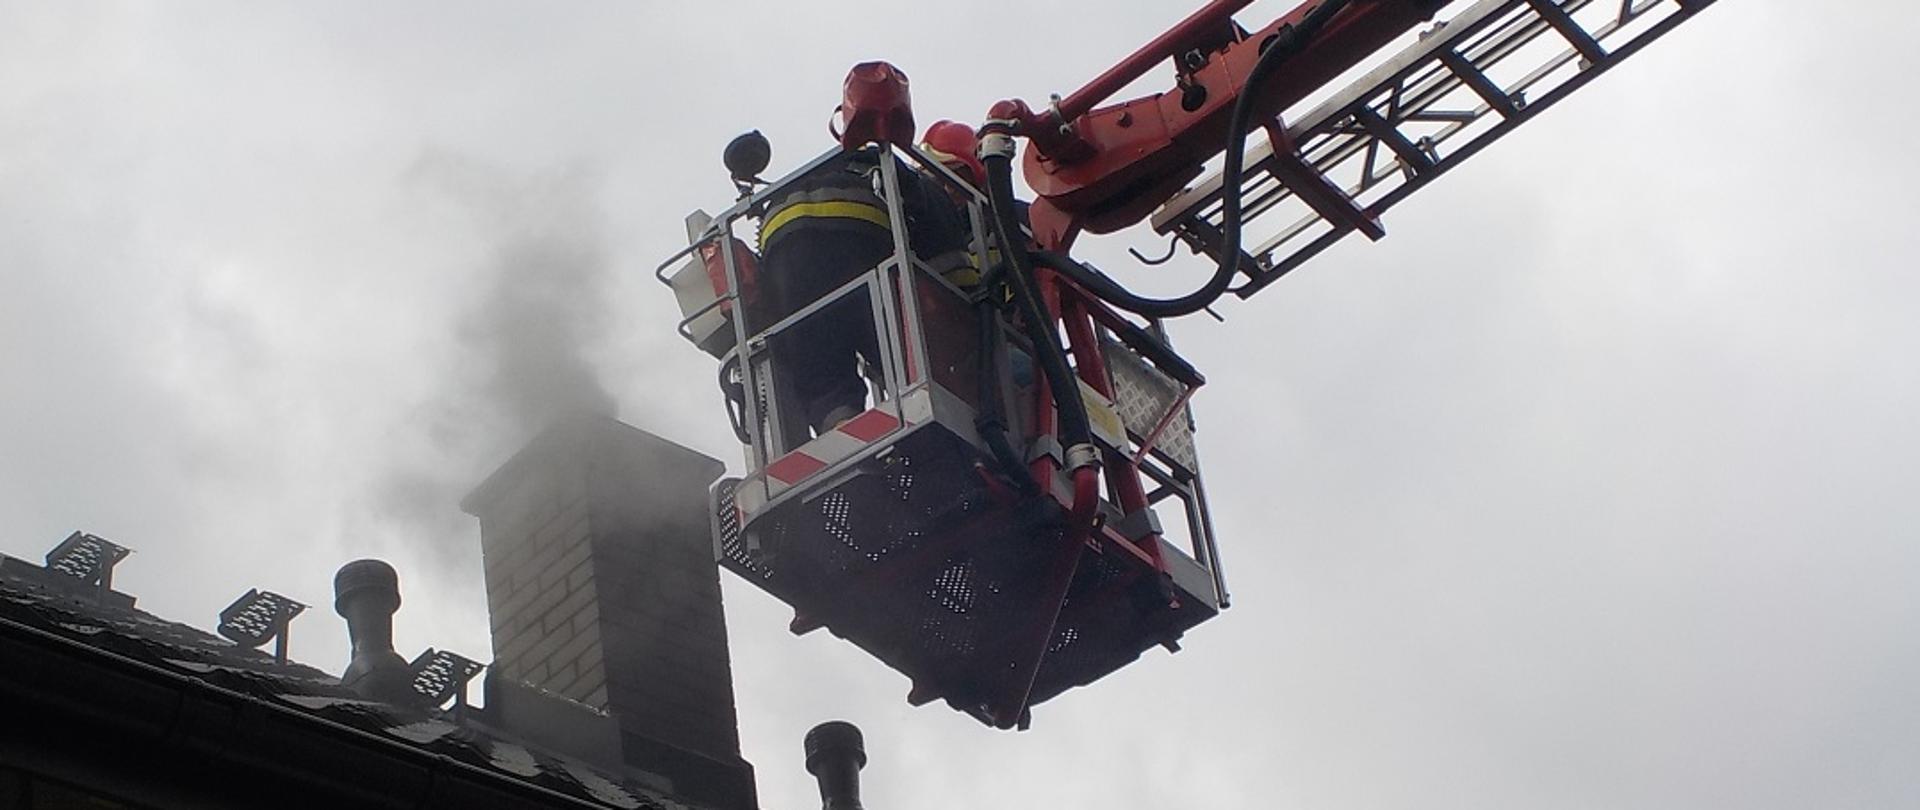 Fotografia przedstawia fragment dachu budynku z widocznym kominem. Przy kominie w koszu podnośnika widać dwóch strażaków w ubraniach bojowych i hełmach podejmujących działania ratowniczo gaśnicze wynikające z zapalenia się sadzy w przewodzie kominowym.